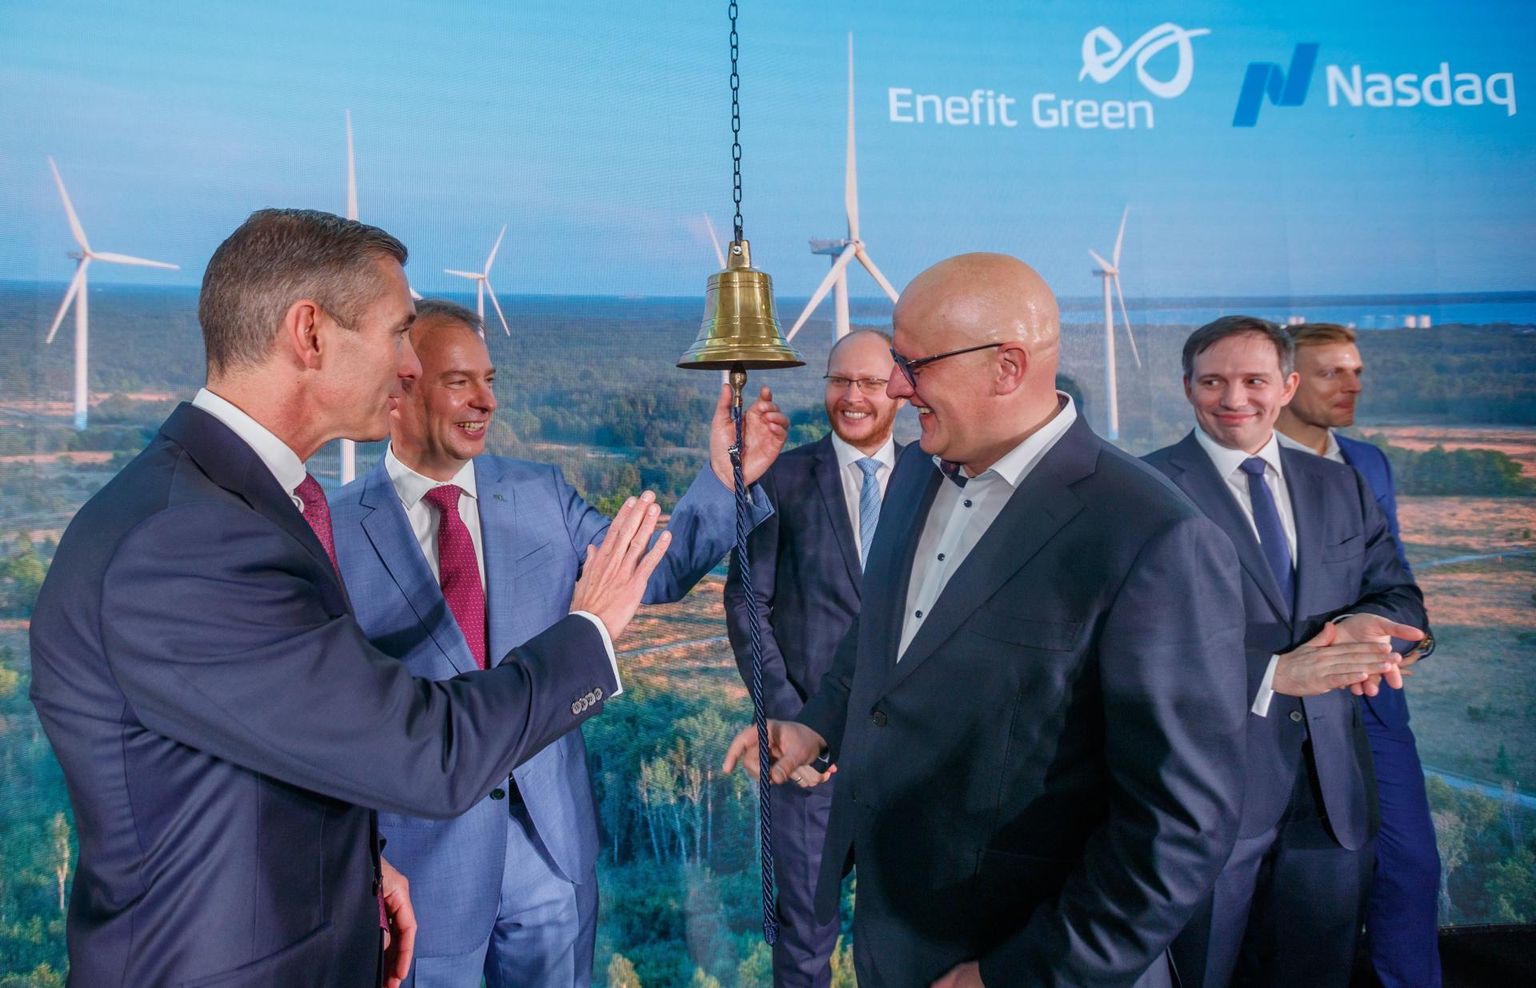 Enefit Greeni aktsia esimese kauplemispäeva tähistamine Energia avastuskeskuses. Pildil vasakult Kaarel Ots, Hando Sutter, Innar Kaasik, Aavo Kärmas, Veiko Räim.  